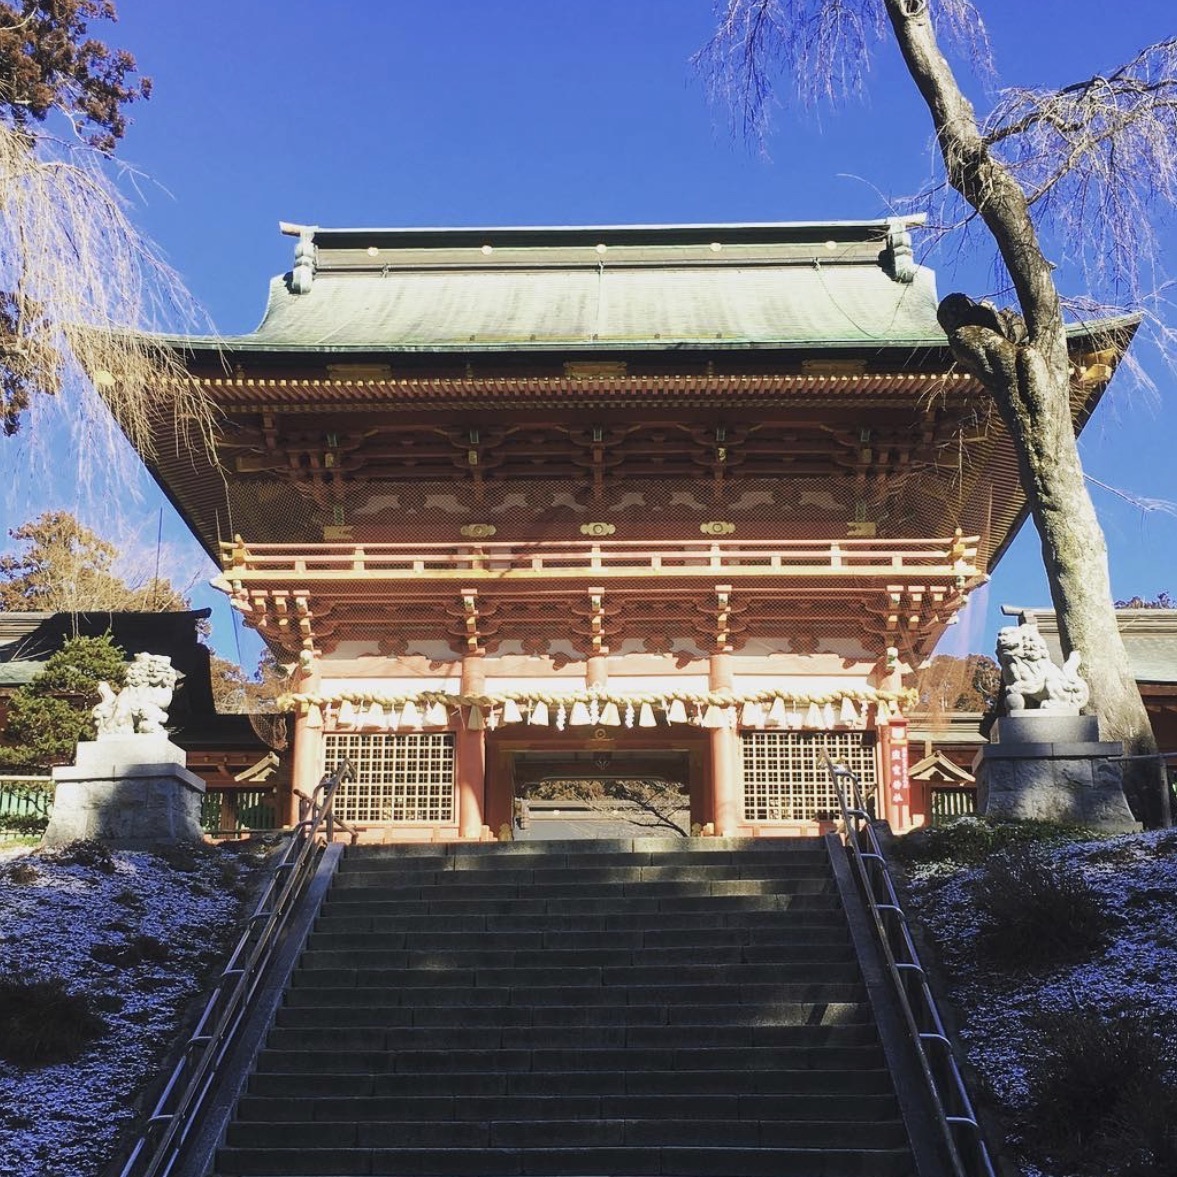 鹽竈神社 宮城随一のパワースポットで塩釜のシンボル 塩の神様 を祀る春が特に美しい神社 Recotrip レコトリップ